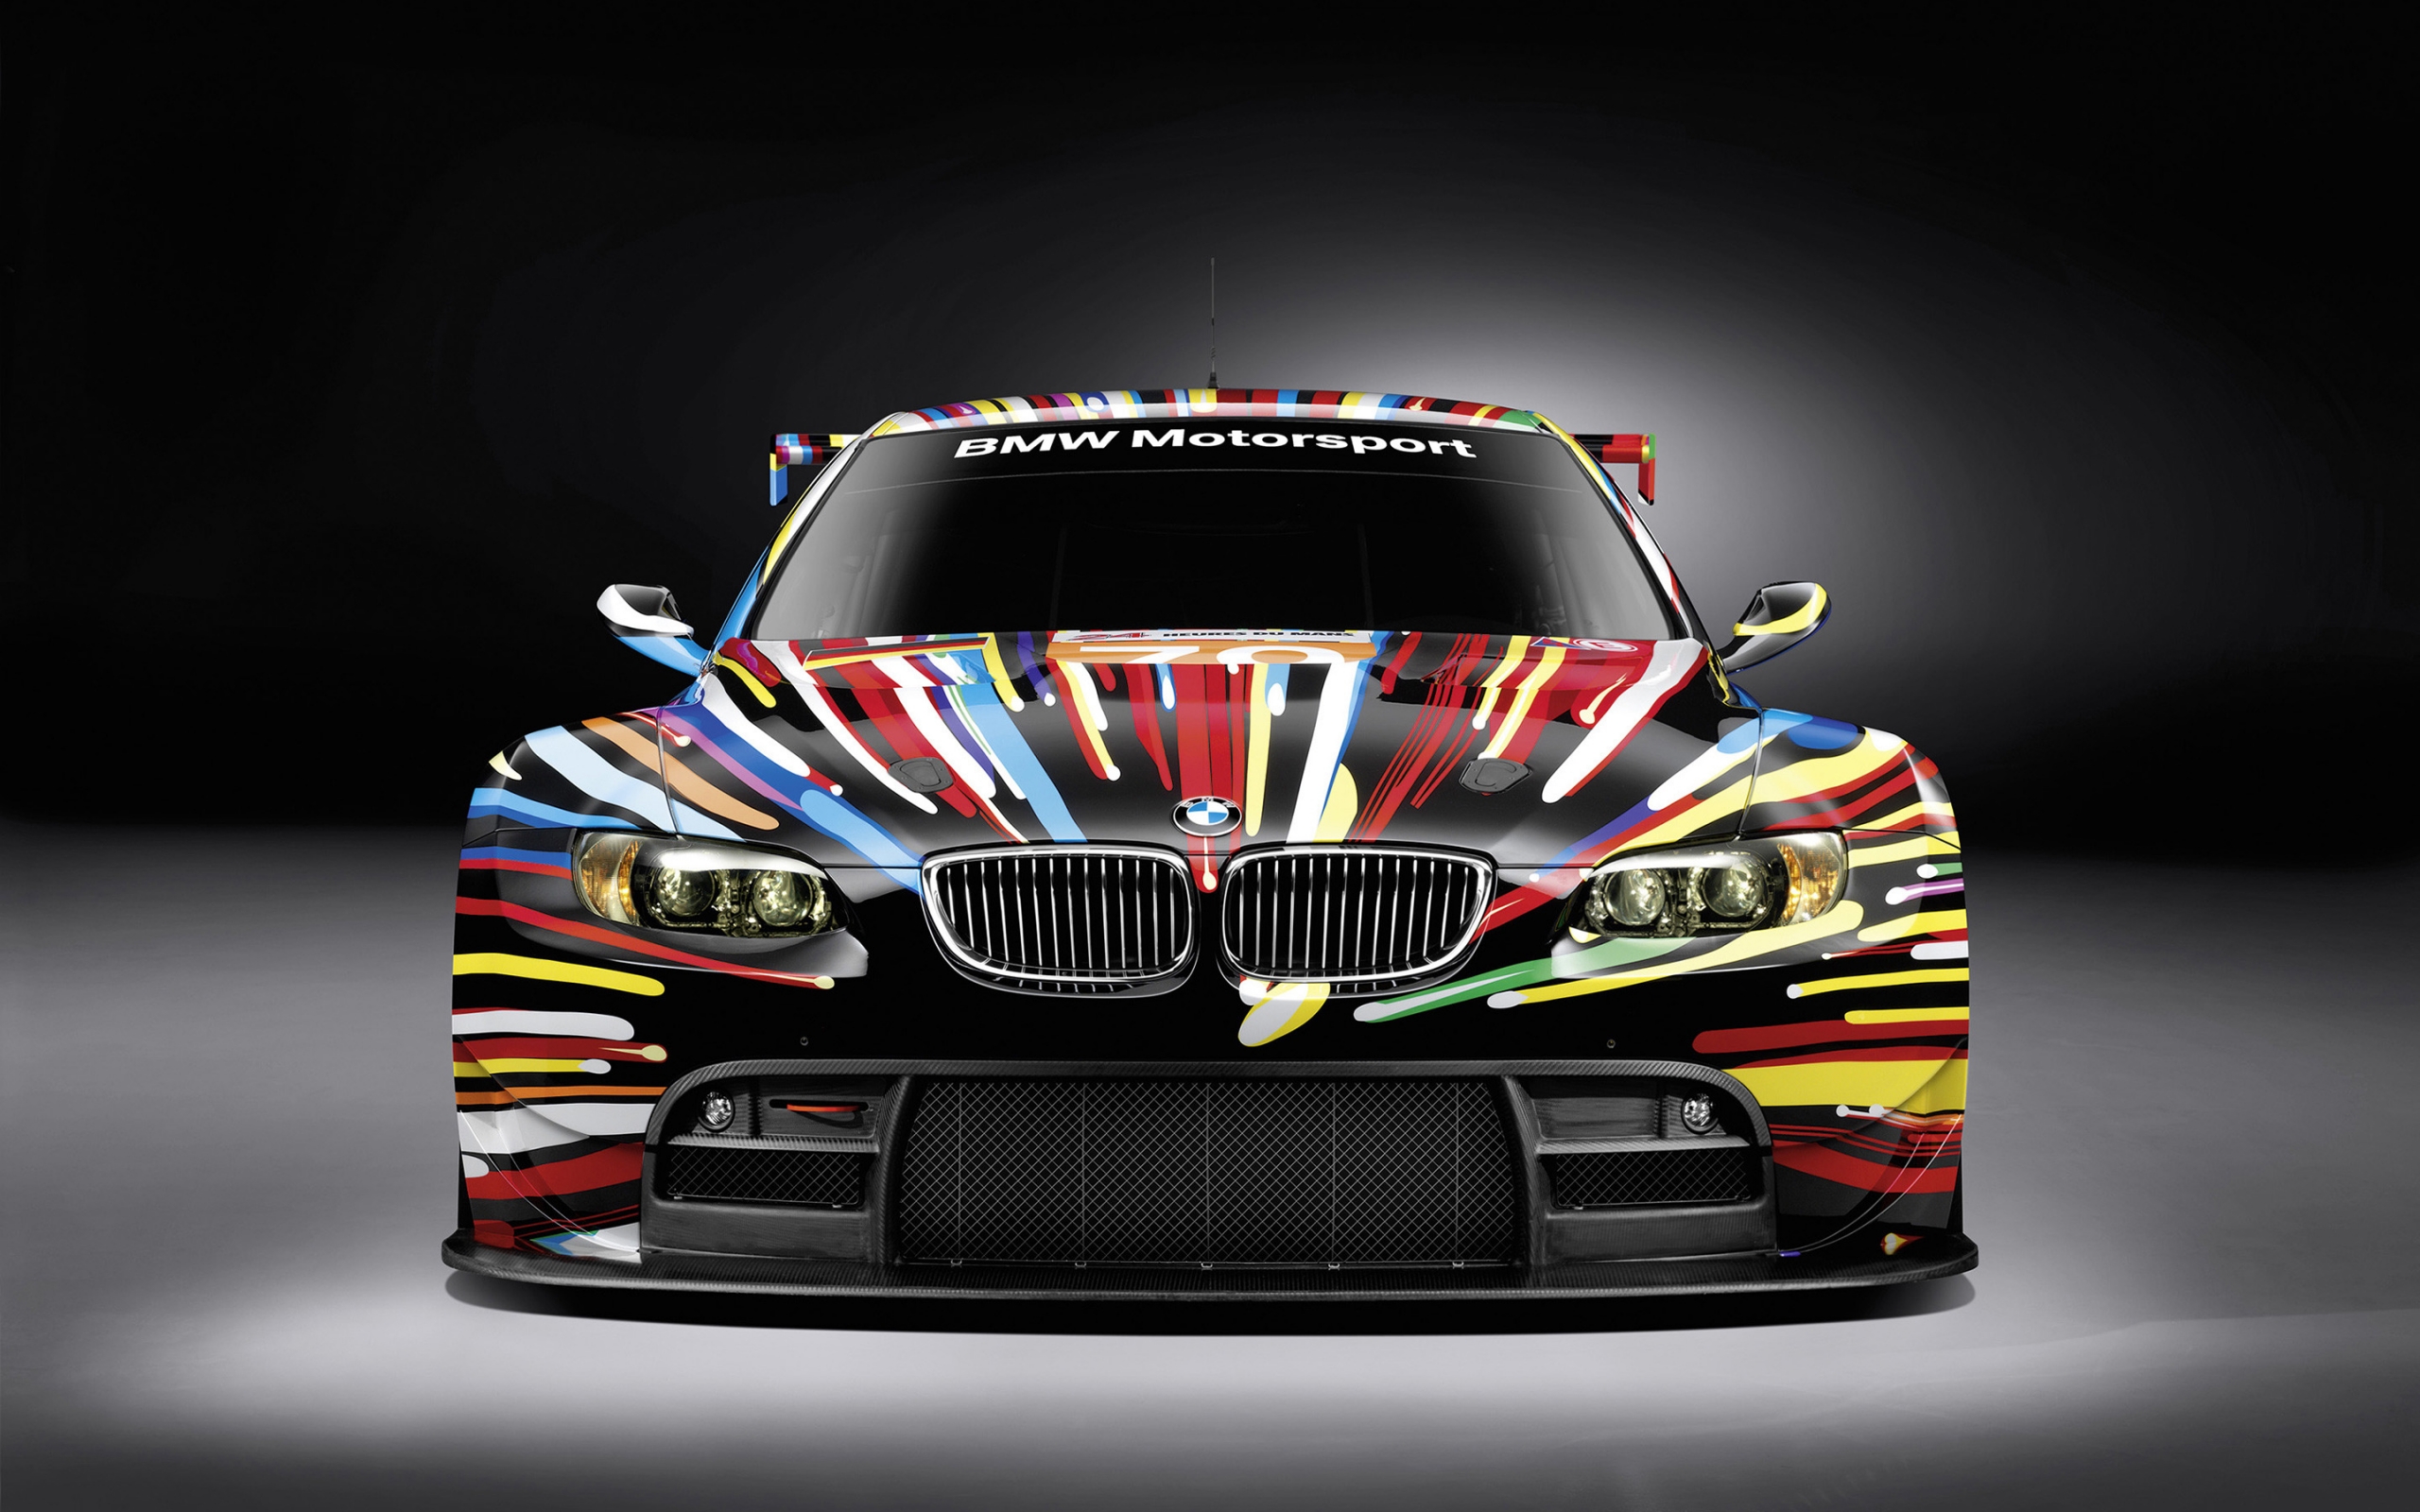 BMW M3 GT 2 Art for 2560 x 1600 widescreen resolution